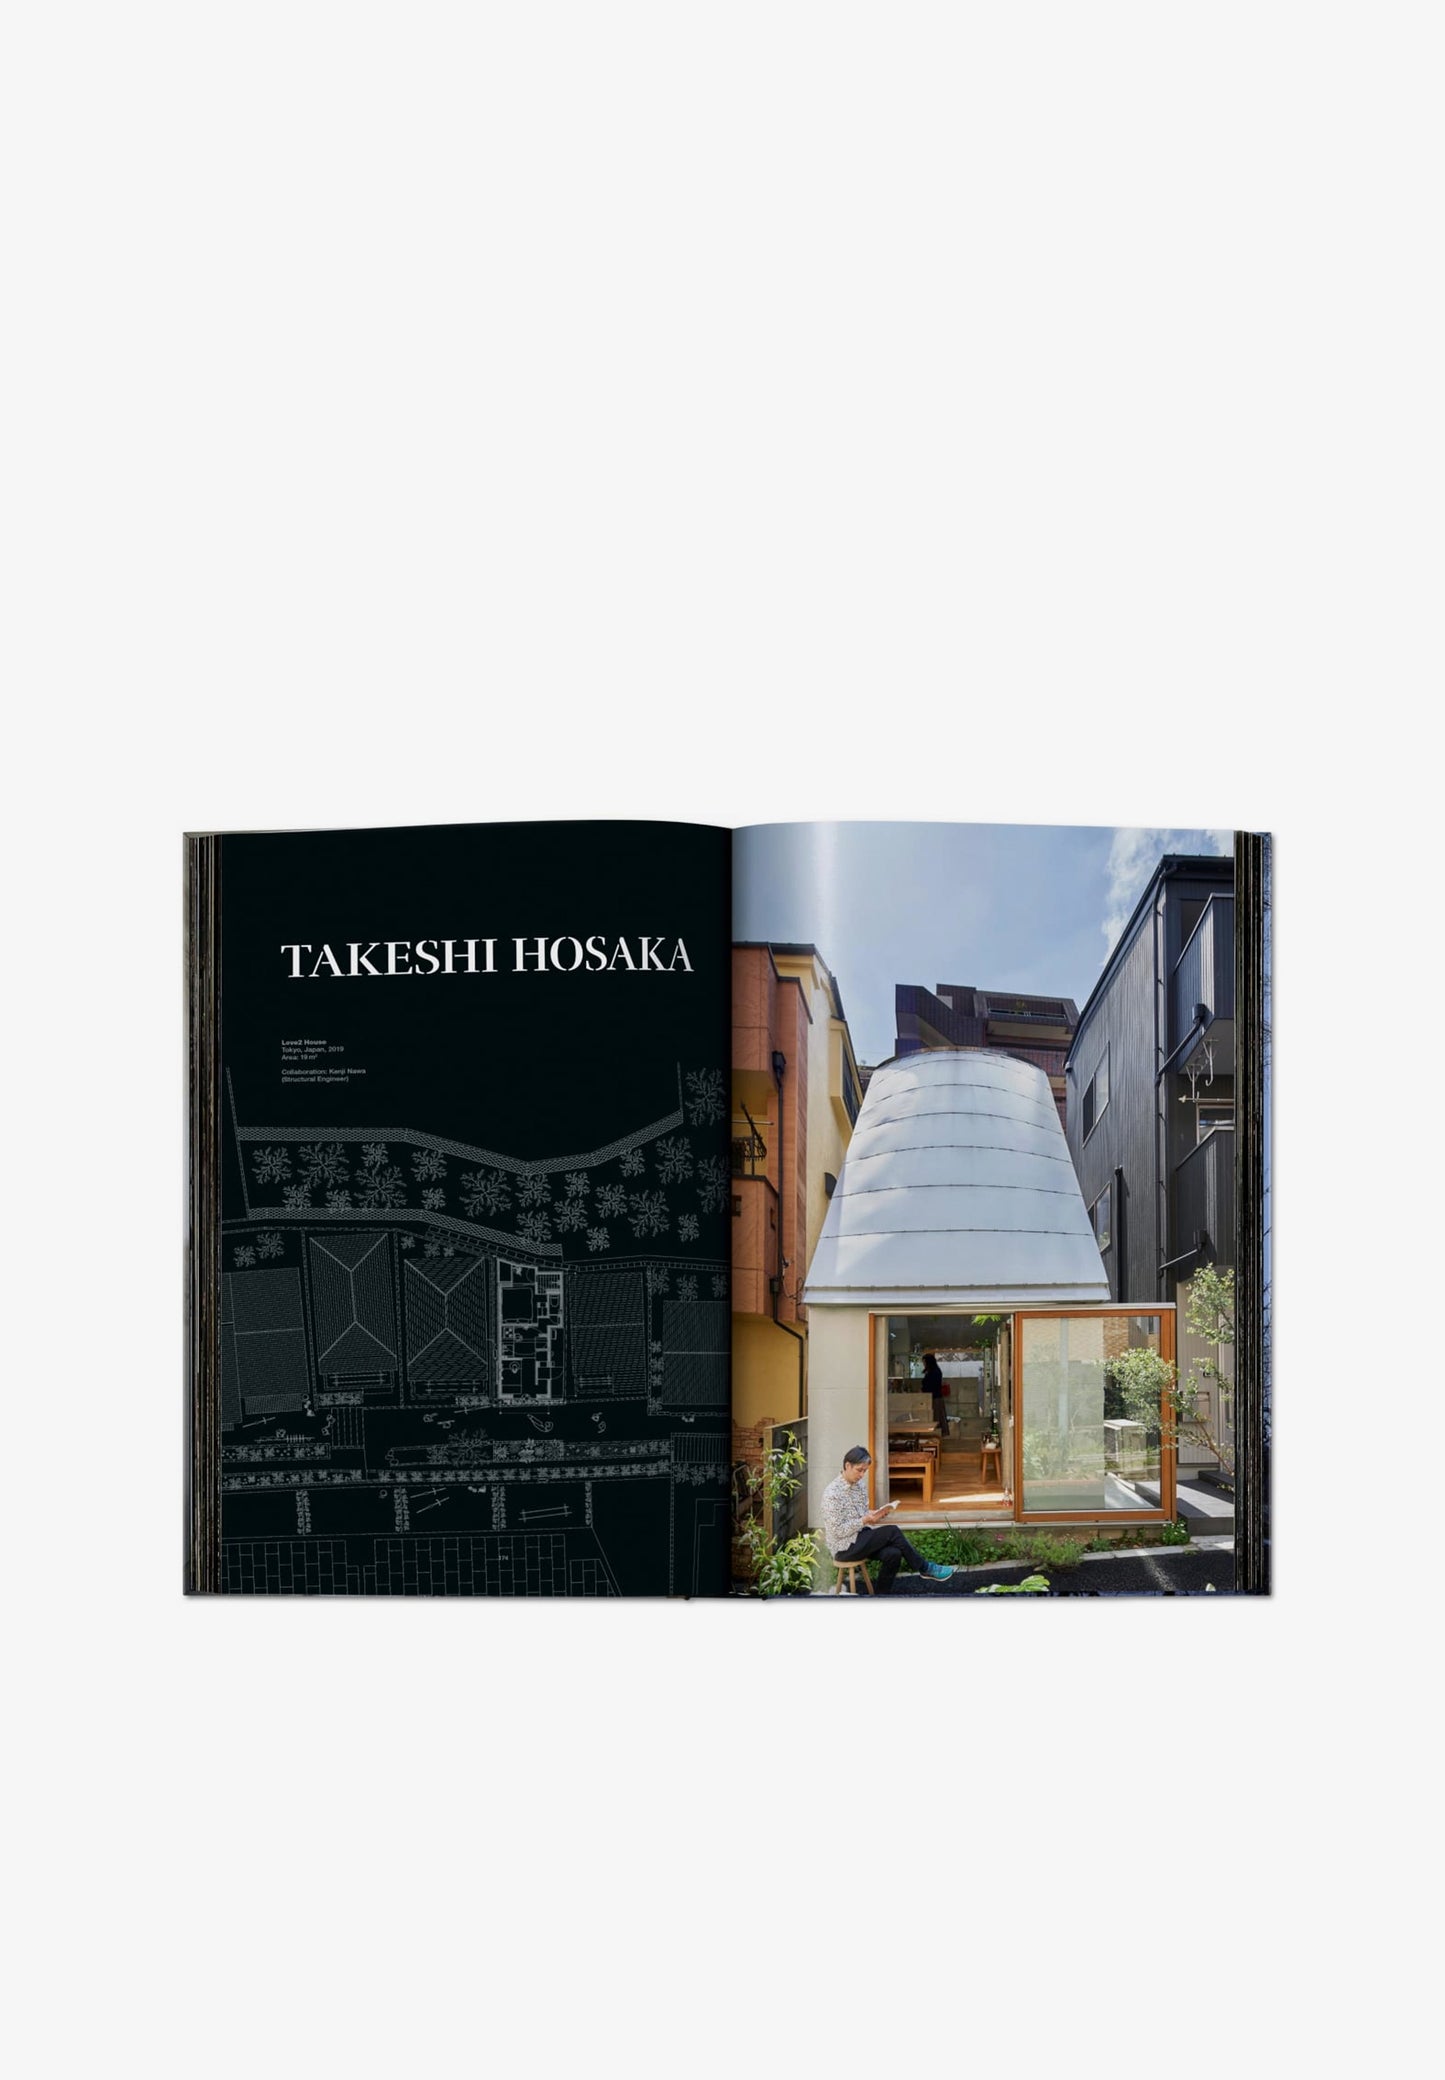 TASCHEN | LIBRO SMALL HOUSES